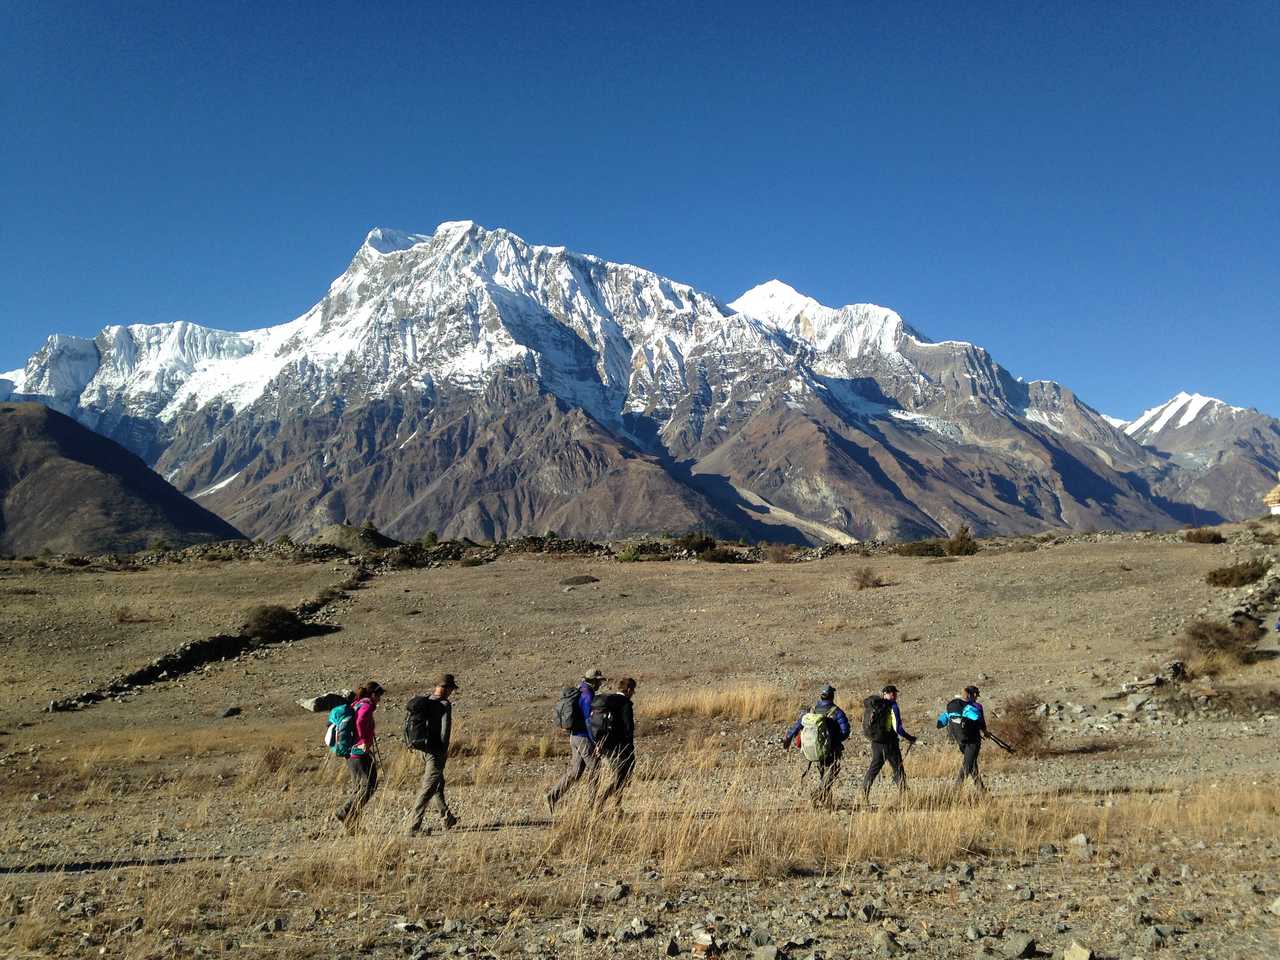 Trek dans les Annapurnas au Népal